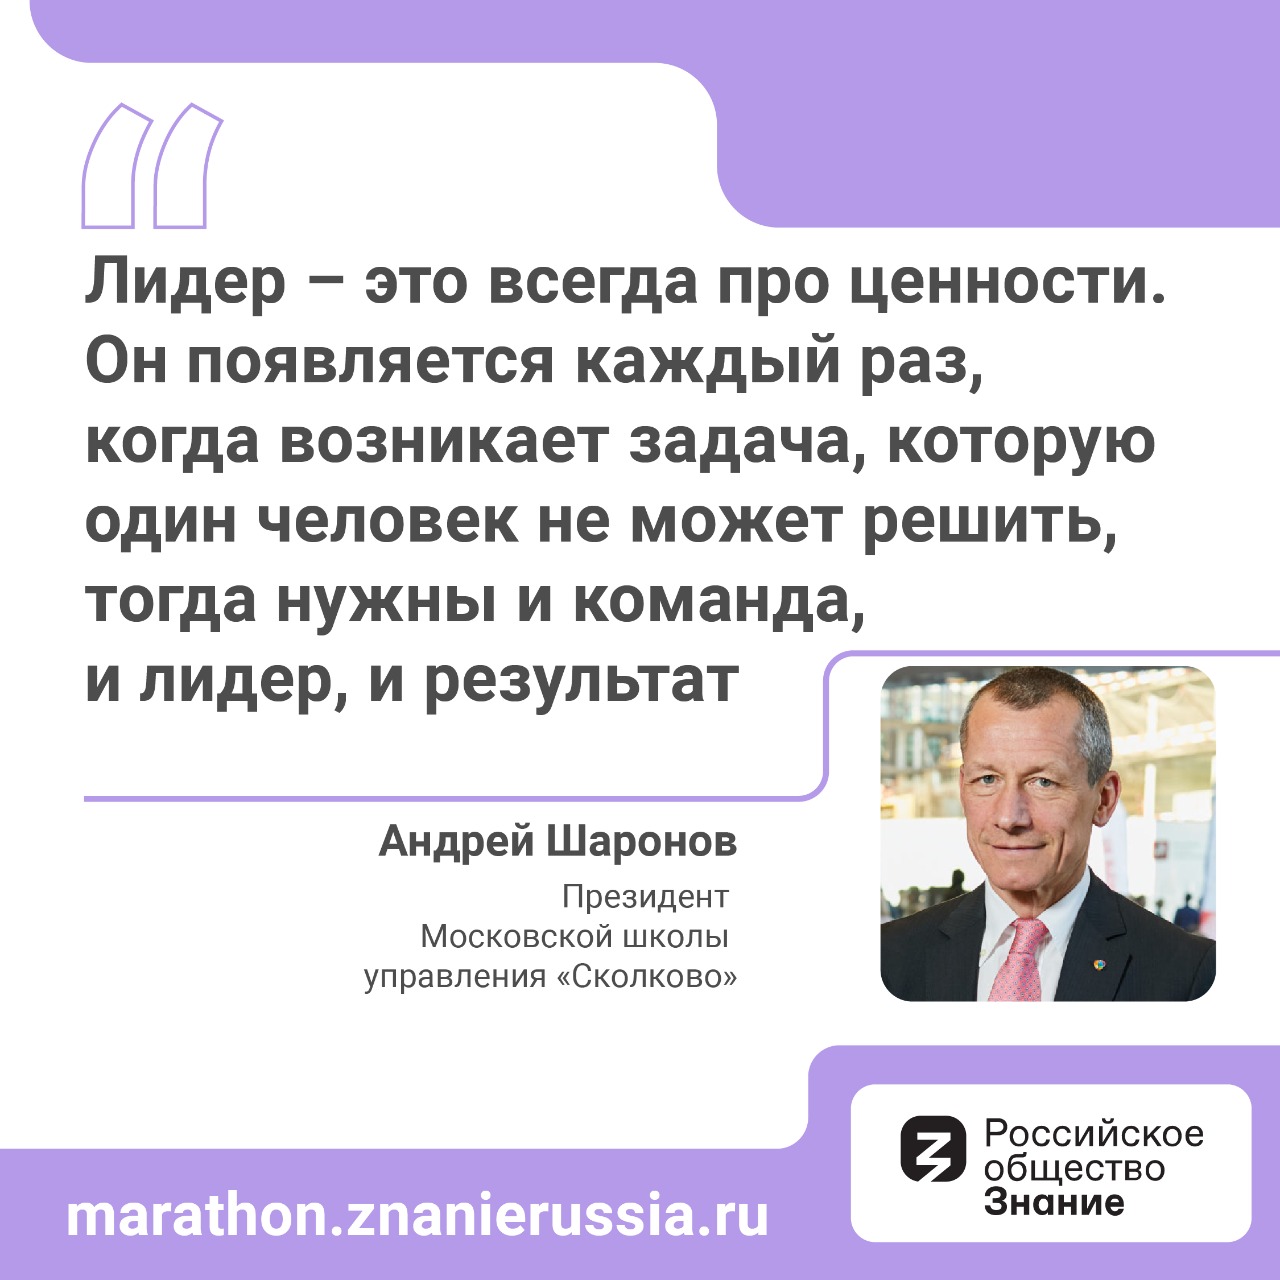 Андрей Шаронов рассказал о личной трансформации в рамках онлайн-марафона